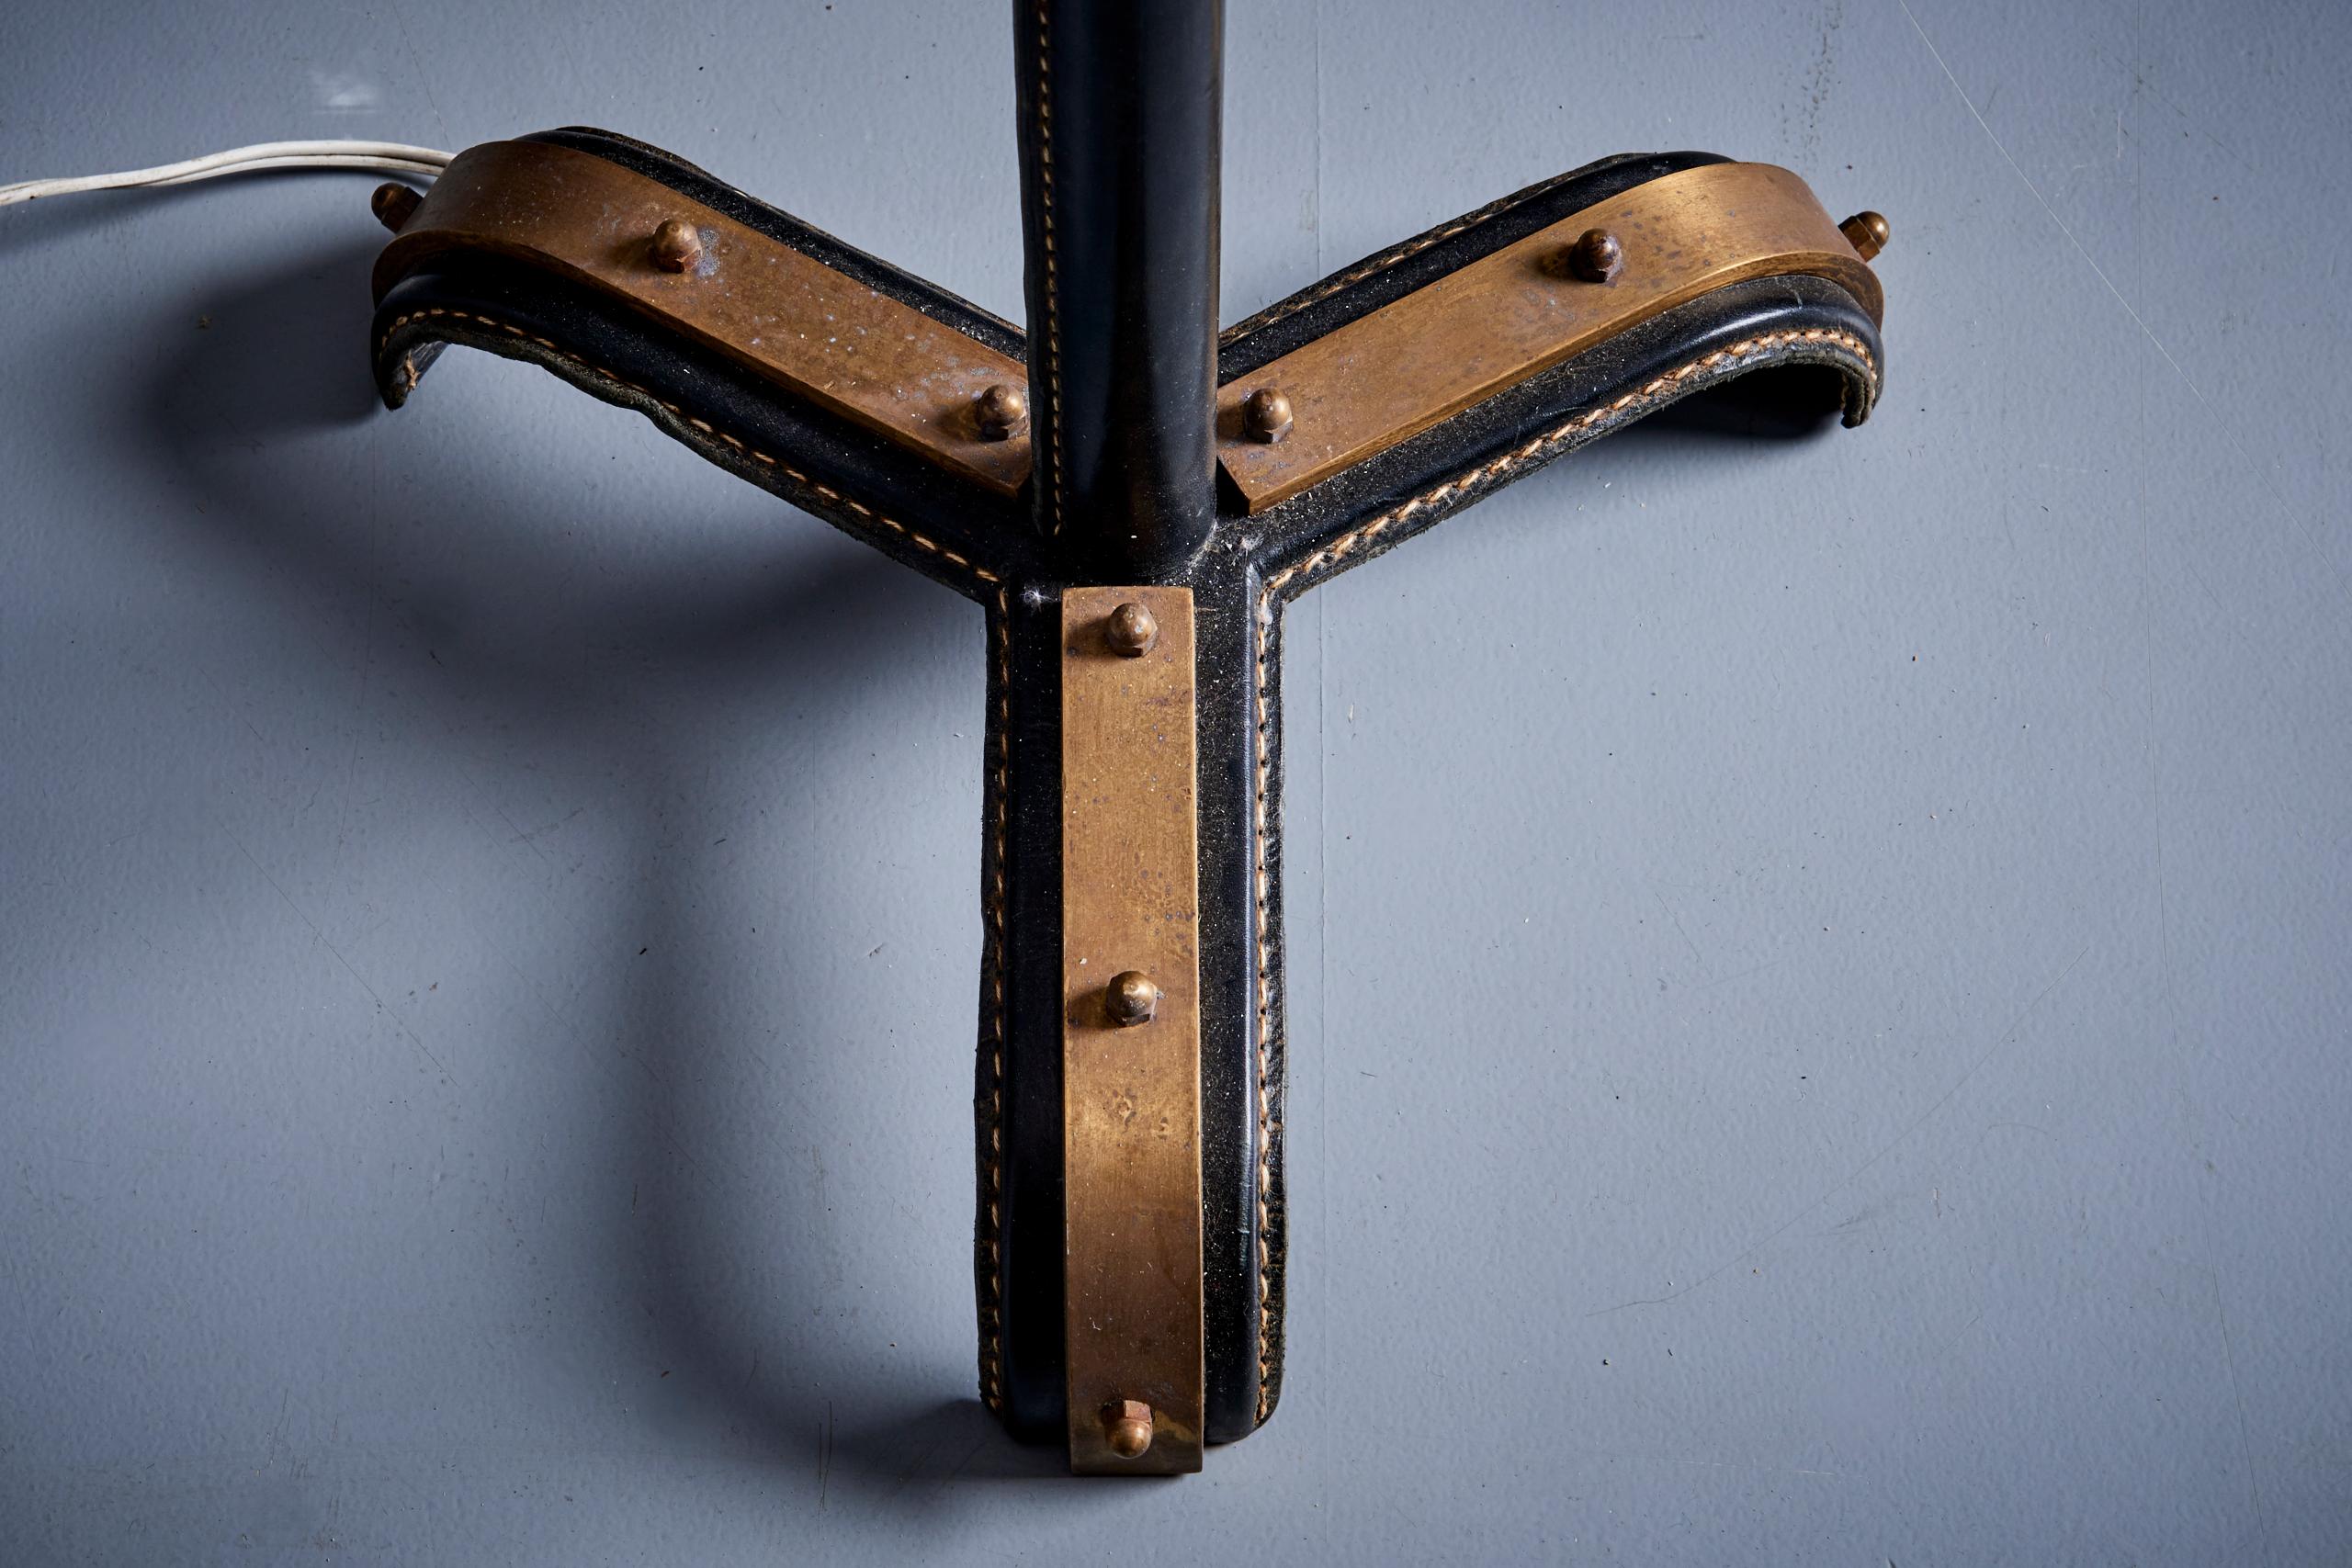 Lampadaire en métal de Jacques Adnet avec de beaux détails en cuir, France - années 1950. Les mesures indiquées s'appliquent à la lampe sans l'abat-jour.

Remarque : la lampe doit être installée par un professionnel conformément aux exigences